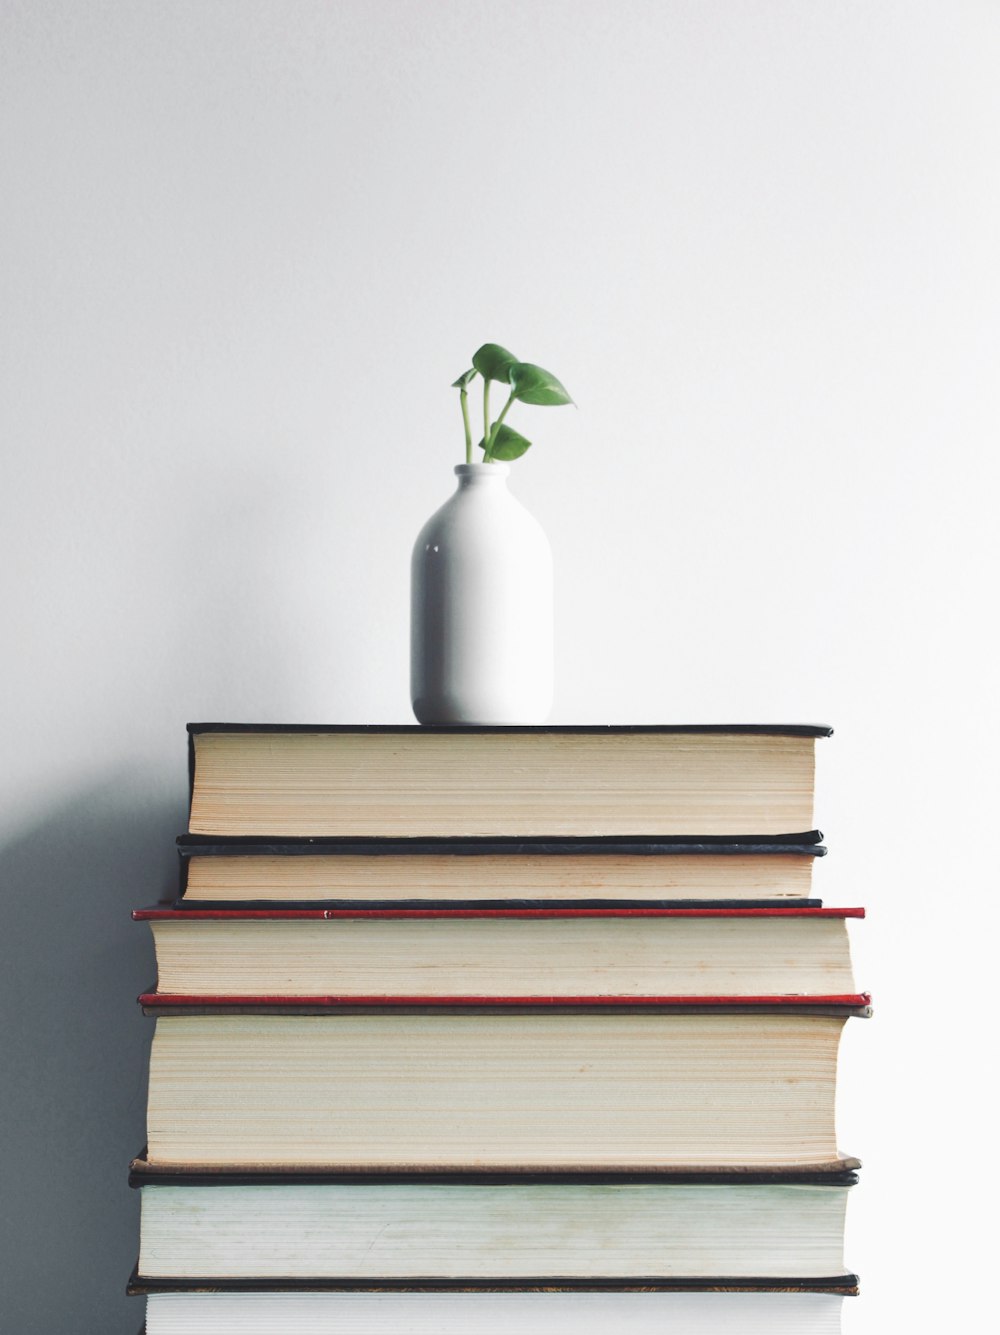 책 위에 녹색 식물이 있는 흰색 세라믹 꽃병